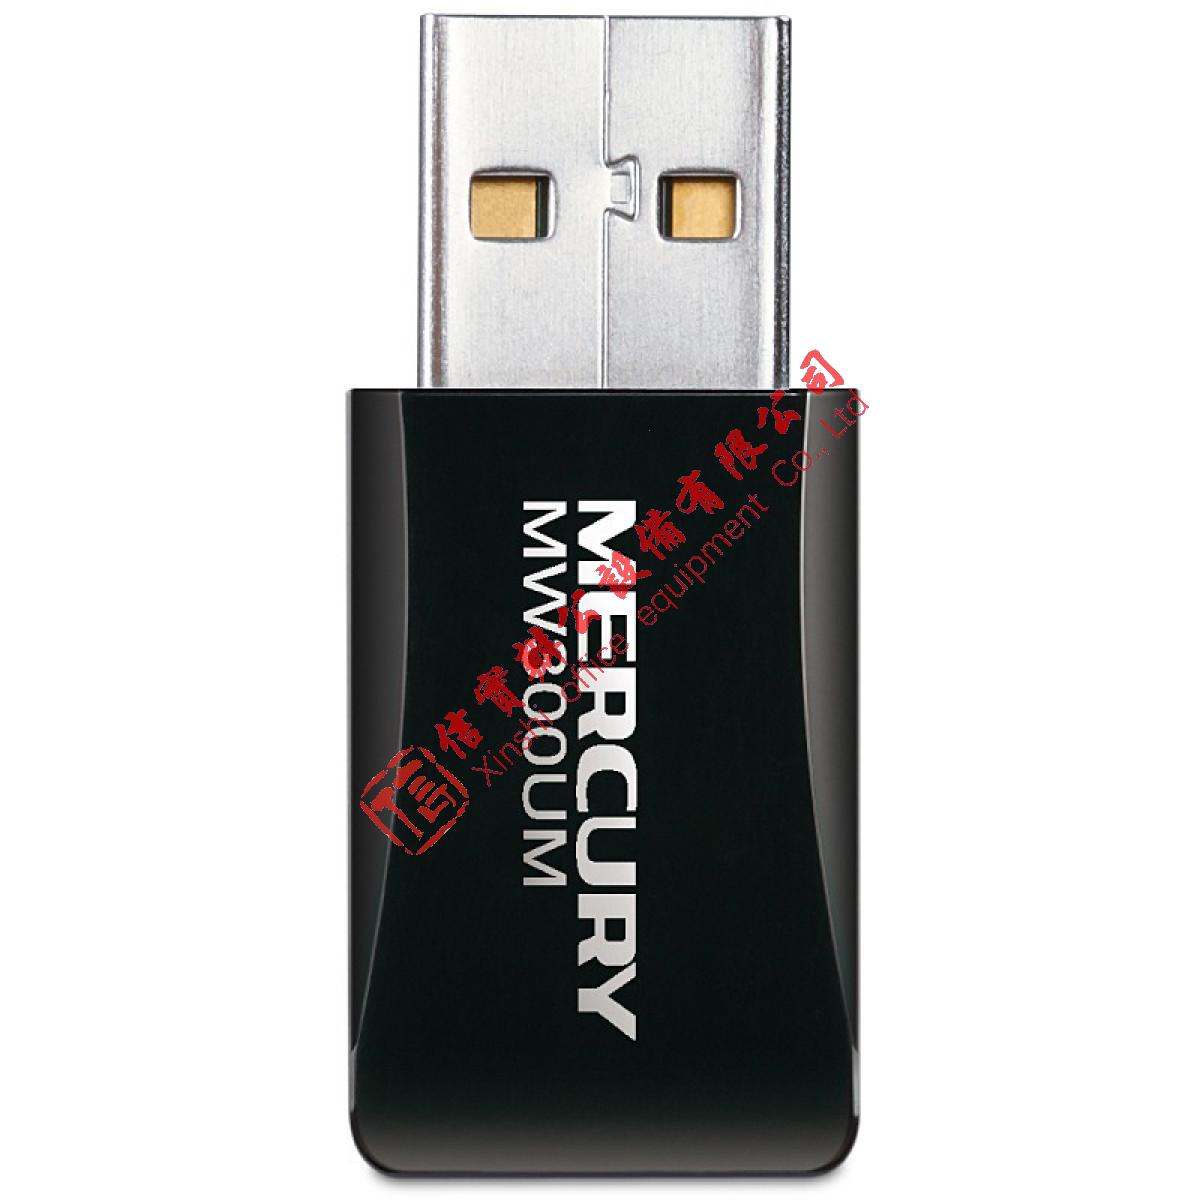 水星（MERCURY) 无线网卡 USB无线网卡 随身WIFI模拟AP网卡 便携式无线网卡 MW300UM 300M迷你USB网卡